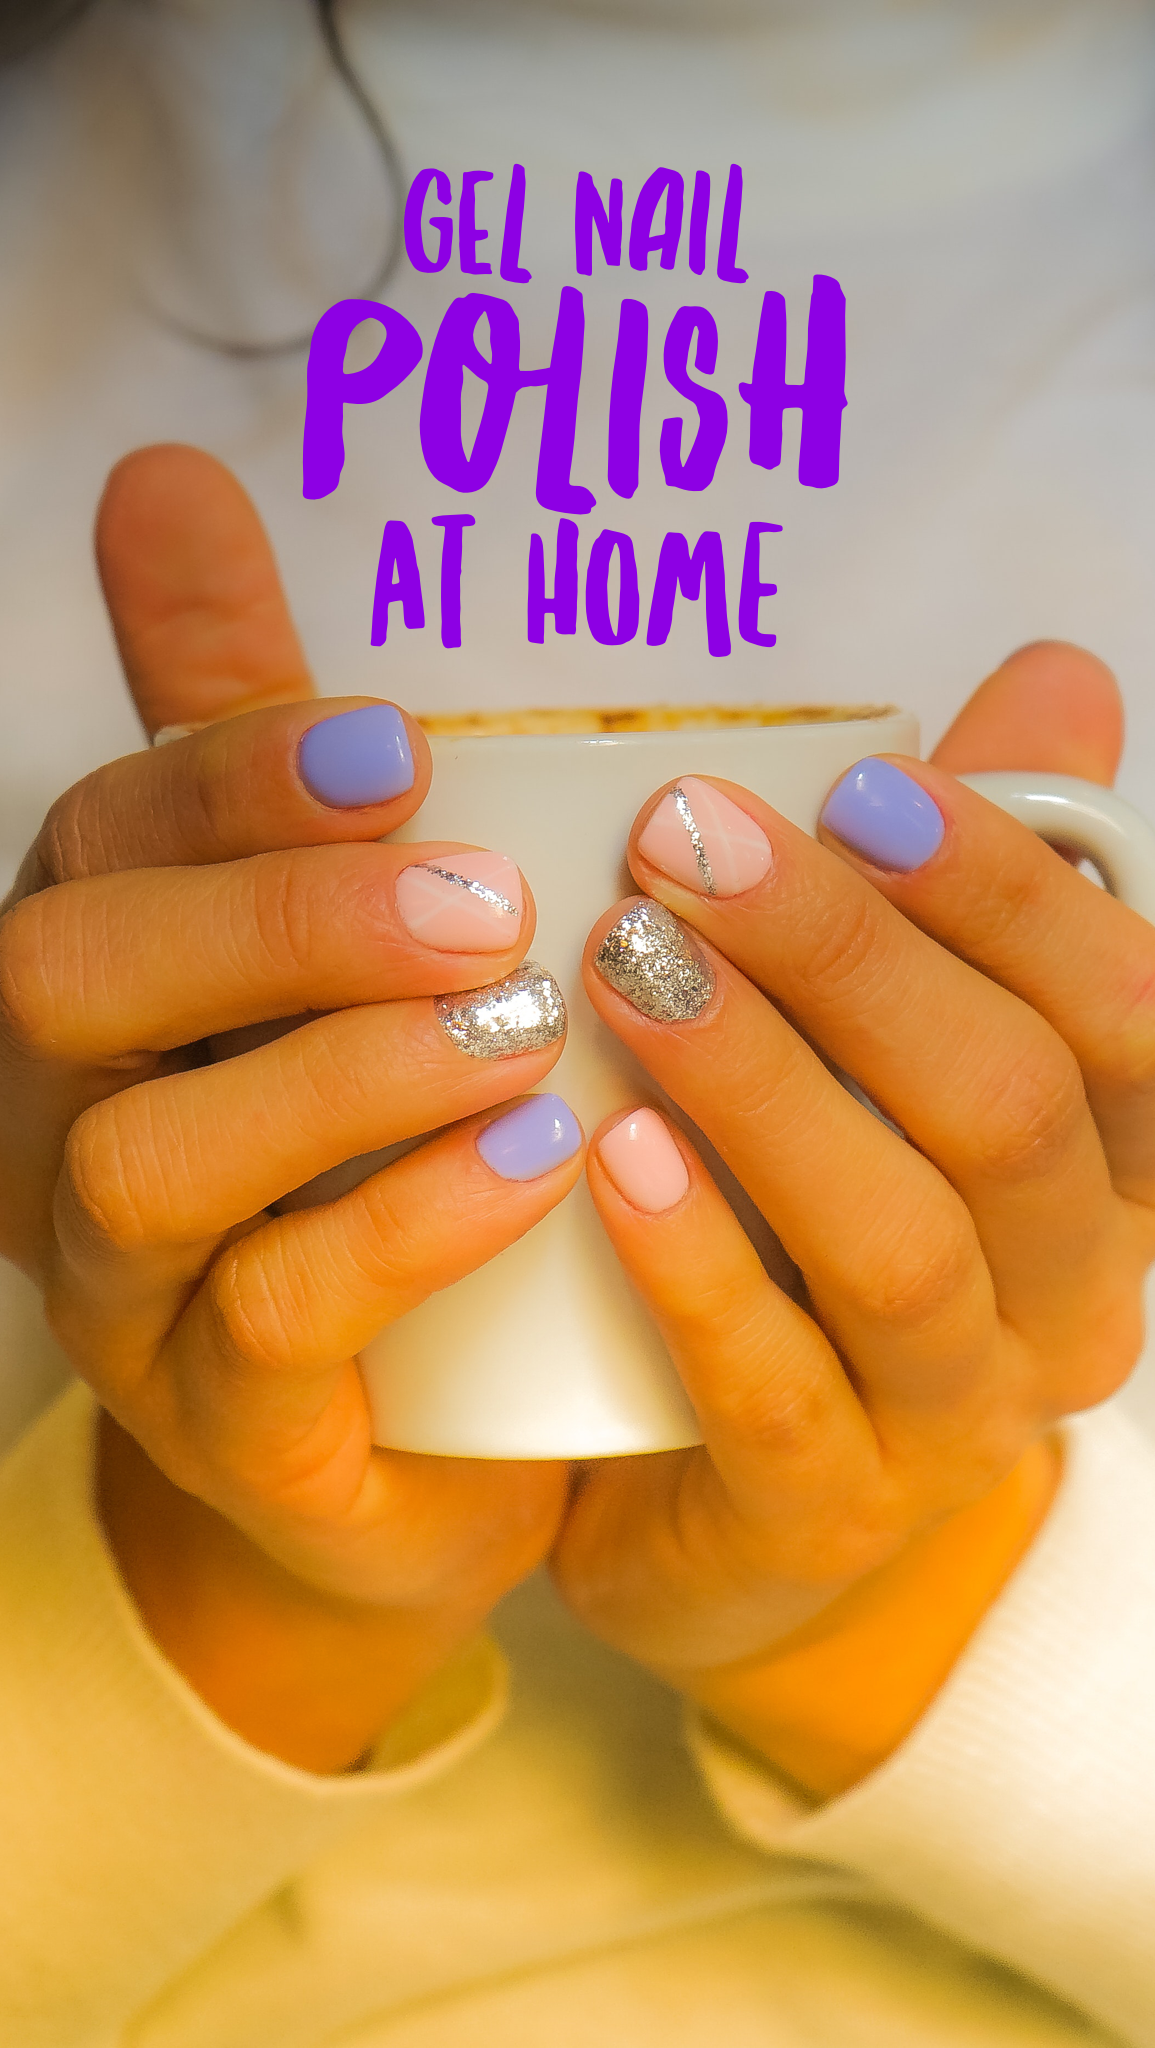 Gel nail polish at home